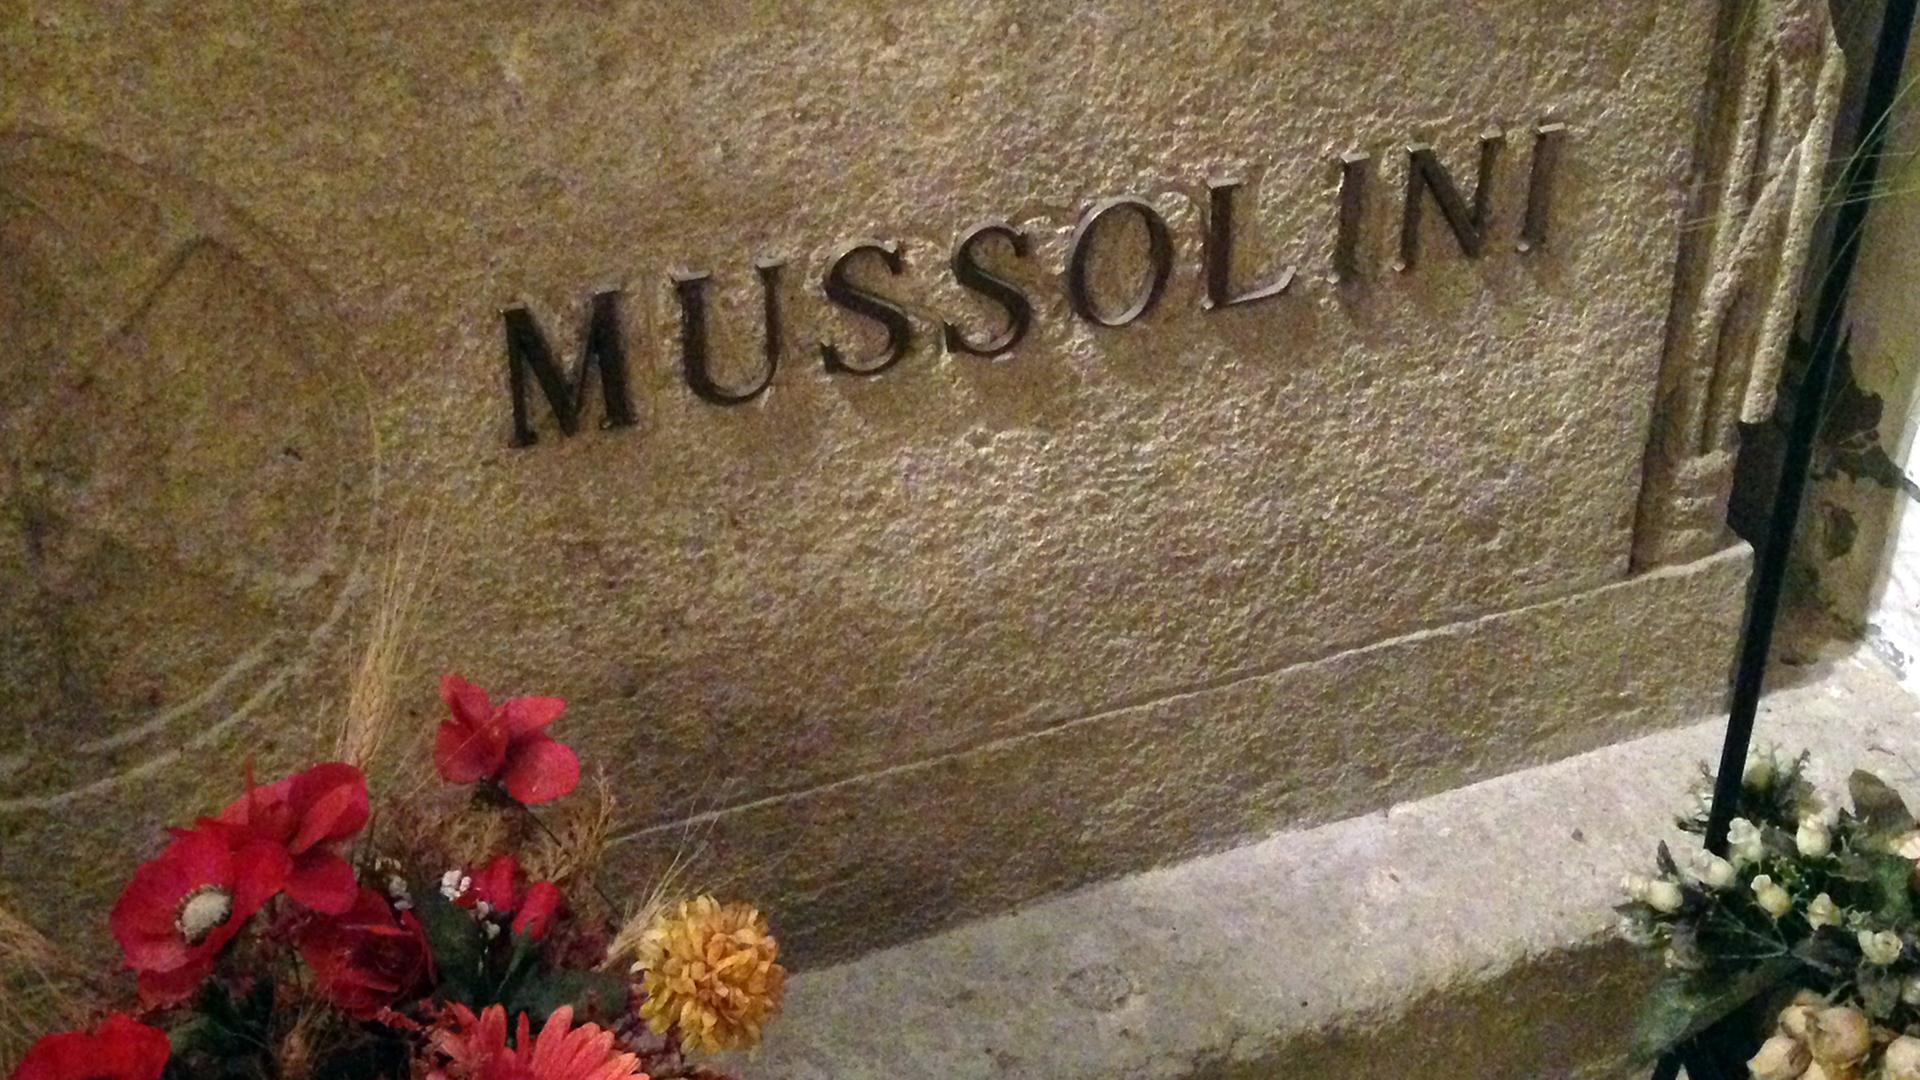 Inschrift in Mussolinis Familienkrypta in Predappio